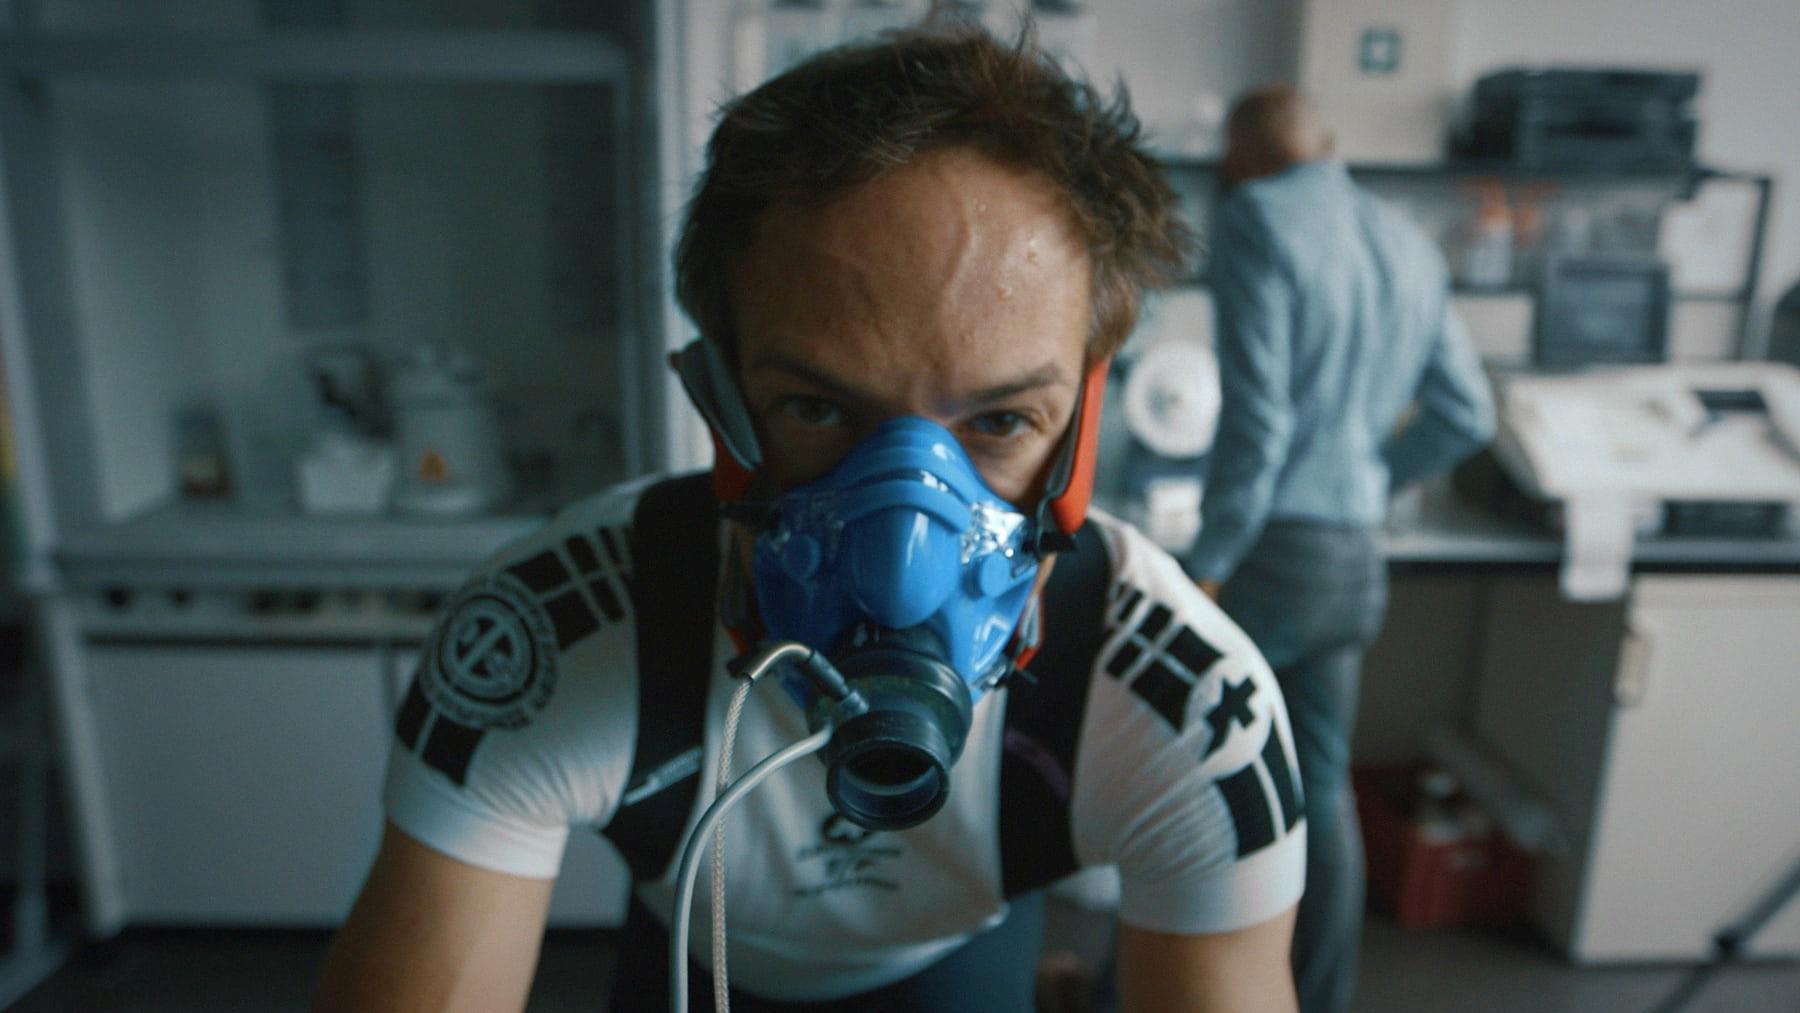 Документальный фильм о допинге в российском спорте получил «Оскар»